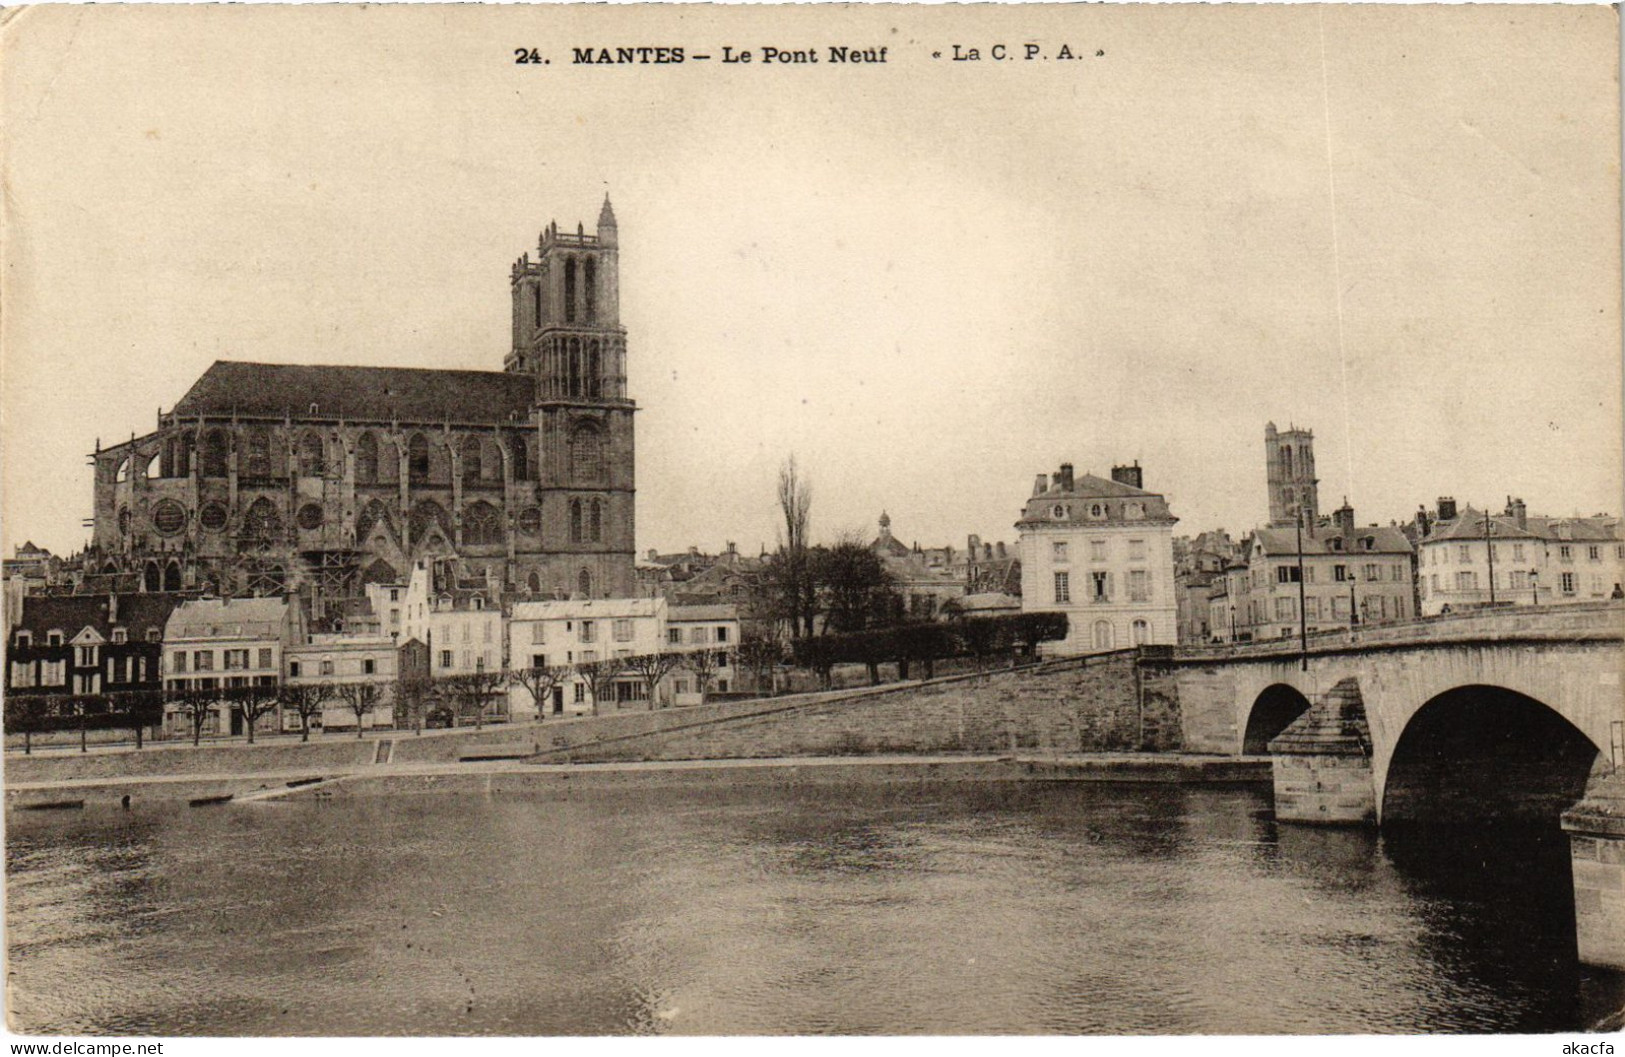 CPA Mantes Le Pont Neuf (1402031) - Mantes La Jolie